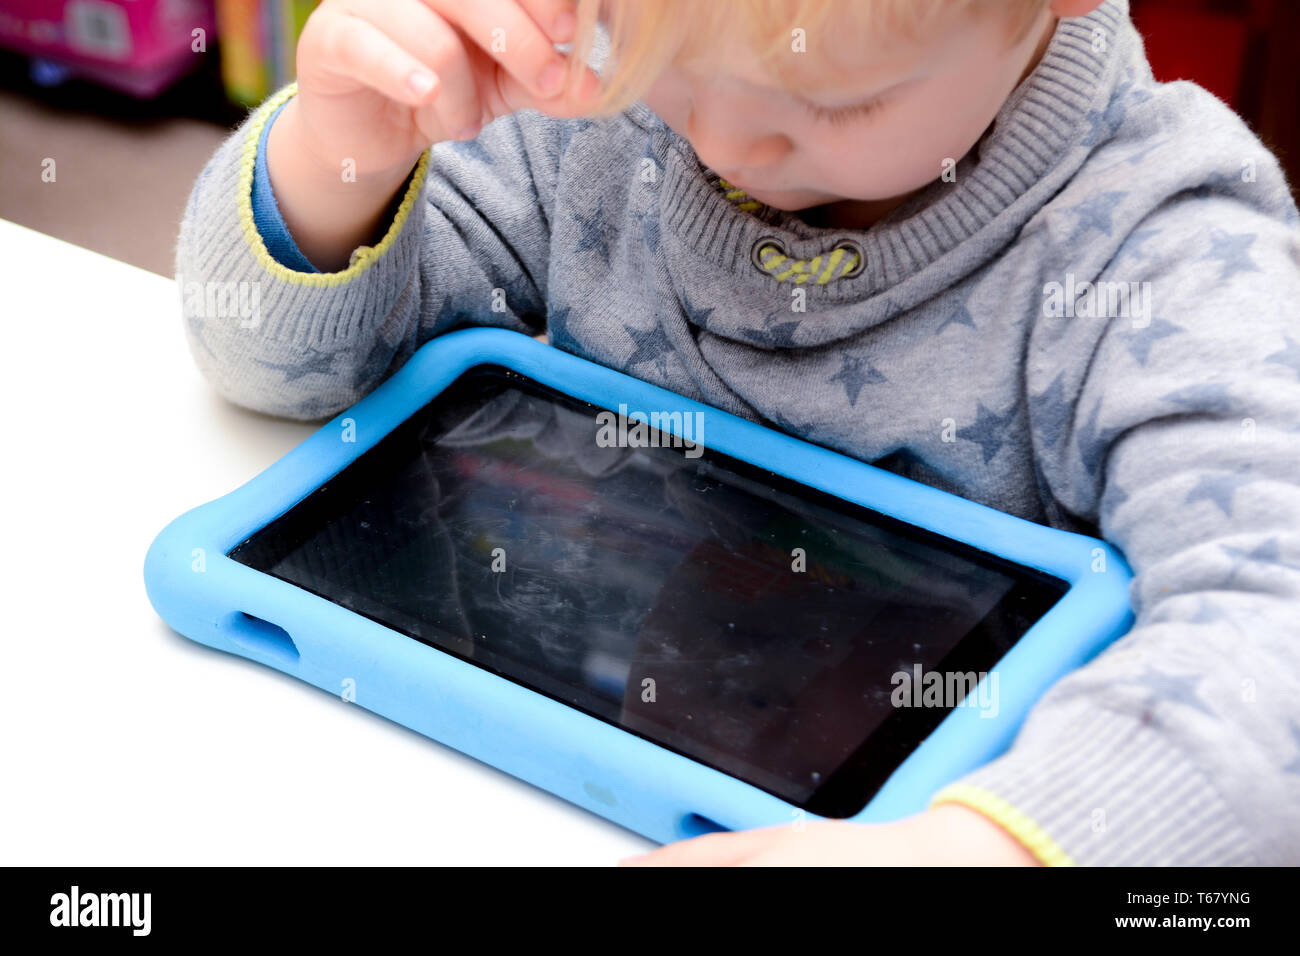 Le jeune enfant est heureux à l'aide d'un ordinateur tablette. Garçon joue avec l'appareil à la maison sur canapé Banque D'Images